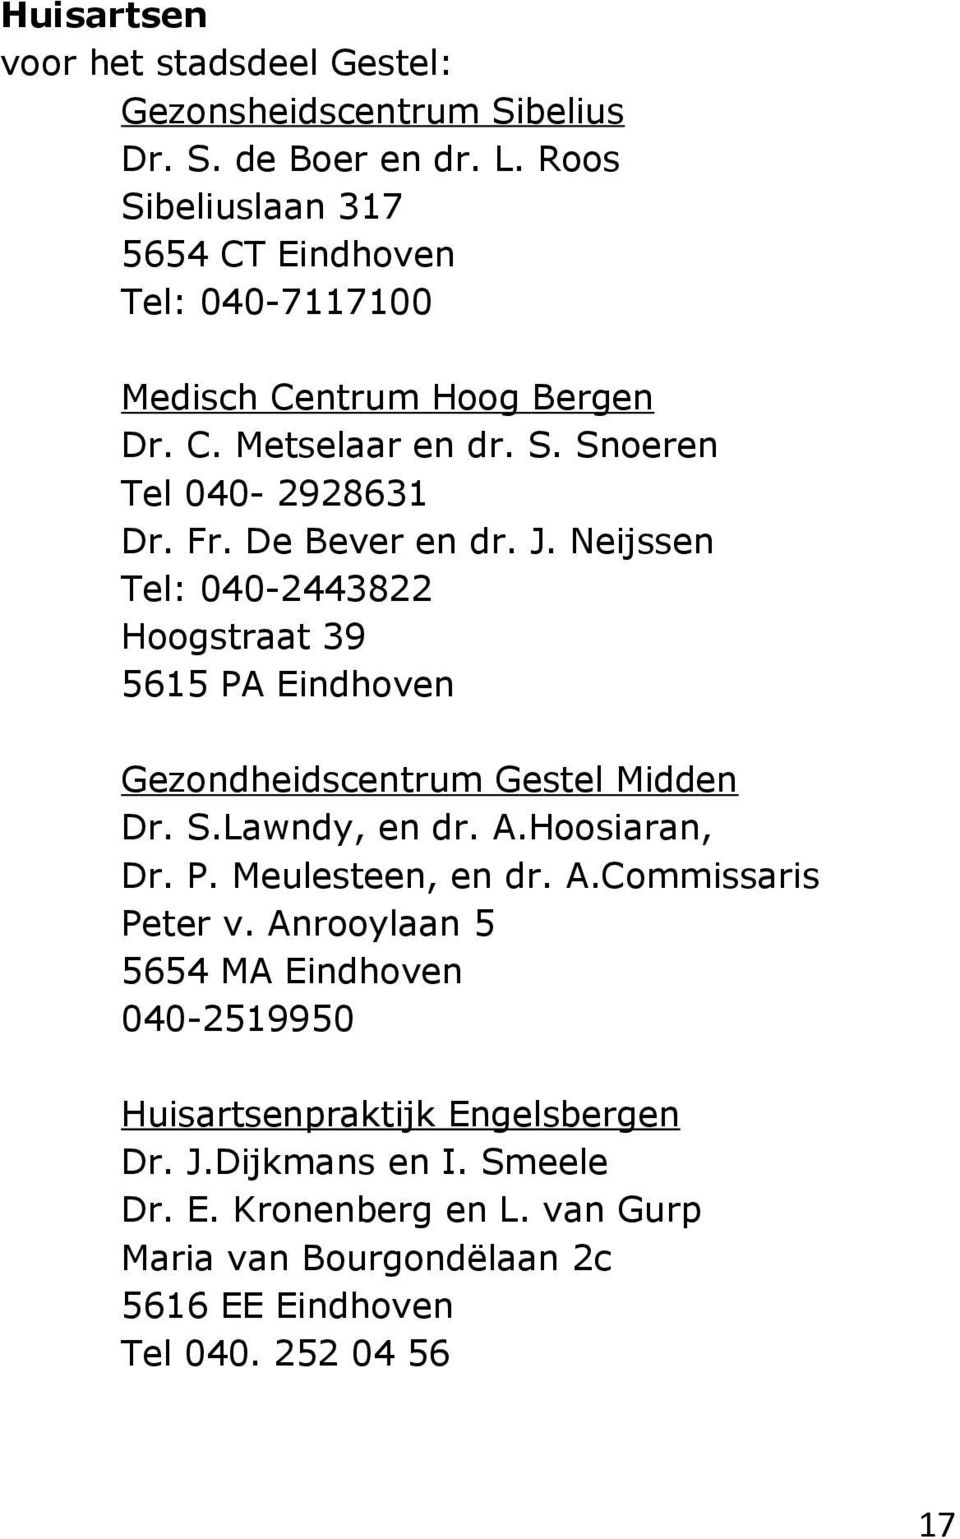 De Bever en dr. J. Neijssen Tel: 040-2443822 Hoogstraat 39 5615 PA Eindhoven Gezondheidscentrum Gestel Midden Dr. S.Lawndy, en dr. A.Hoosiaran, Dr. P. Meulesteen, en dr.